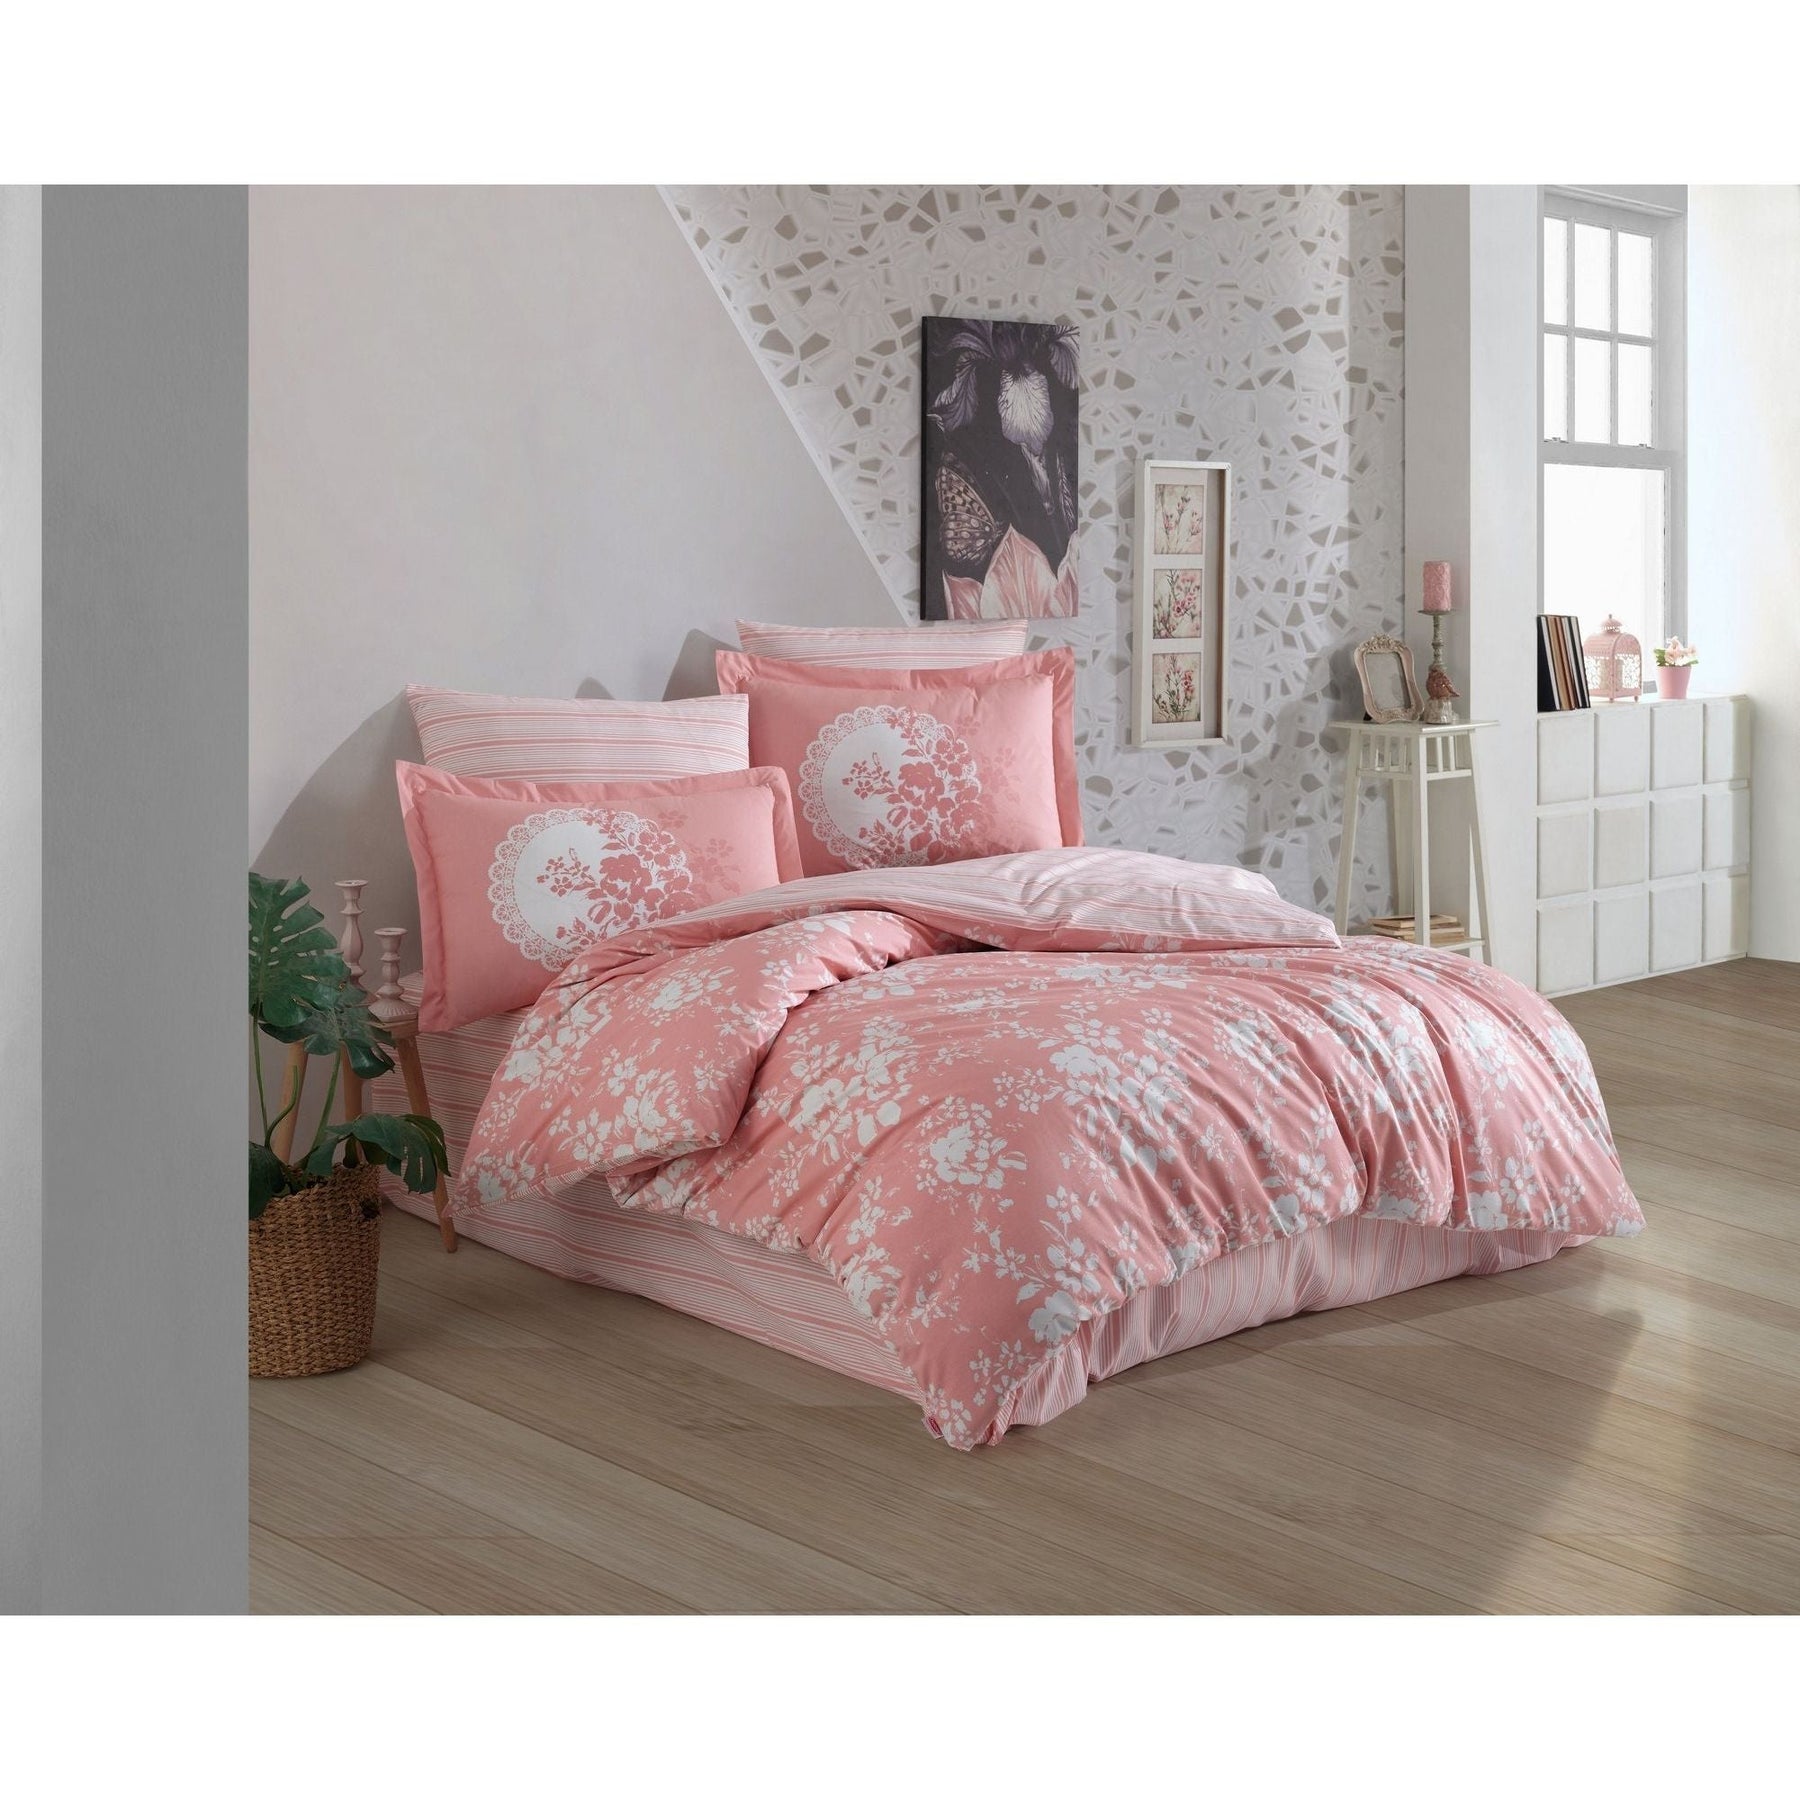 Set lenjerie de pat Flora, roz/alb, bumbac 100%, 4 piese, 240x260 cm